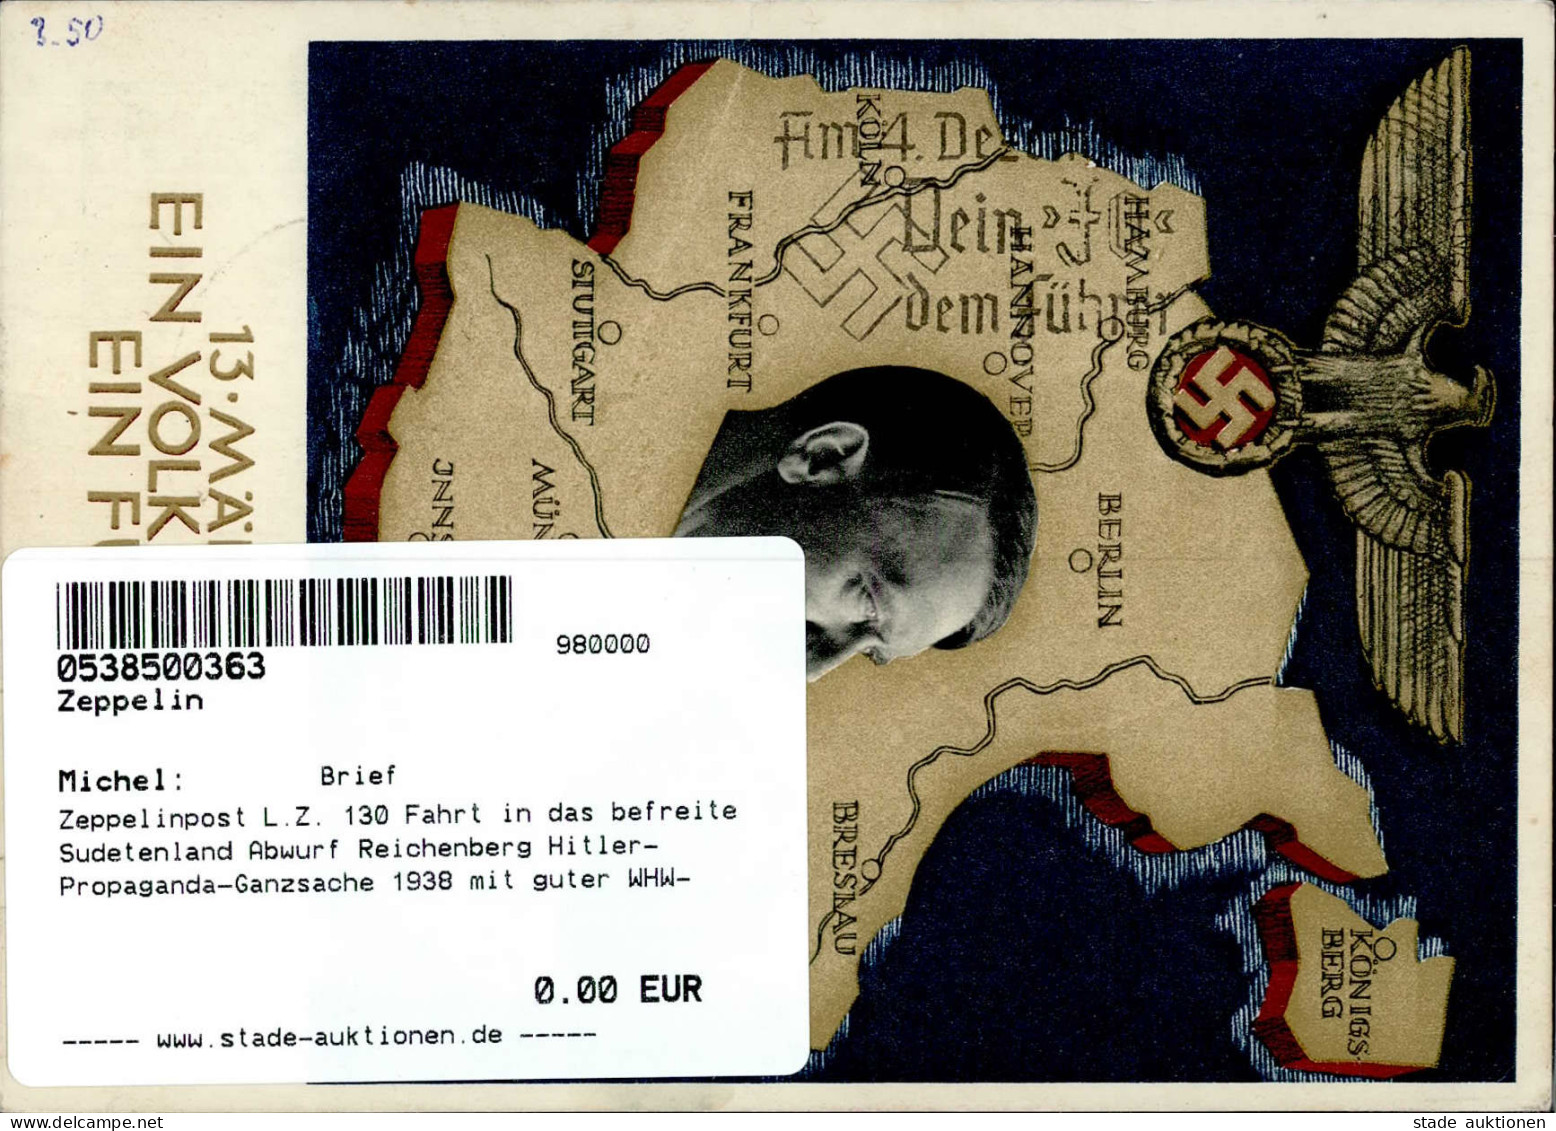 Zeppelinpost L.Z. 130 Fahrt In Das Befreite Sudetenland Abwurf Reichenberg Hitler-Propaganda-Ganzsache 1938 Mit Guter WH - Airships